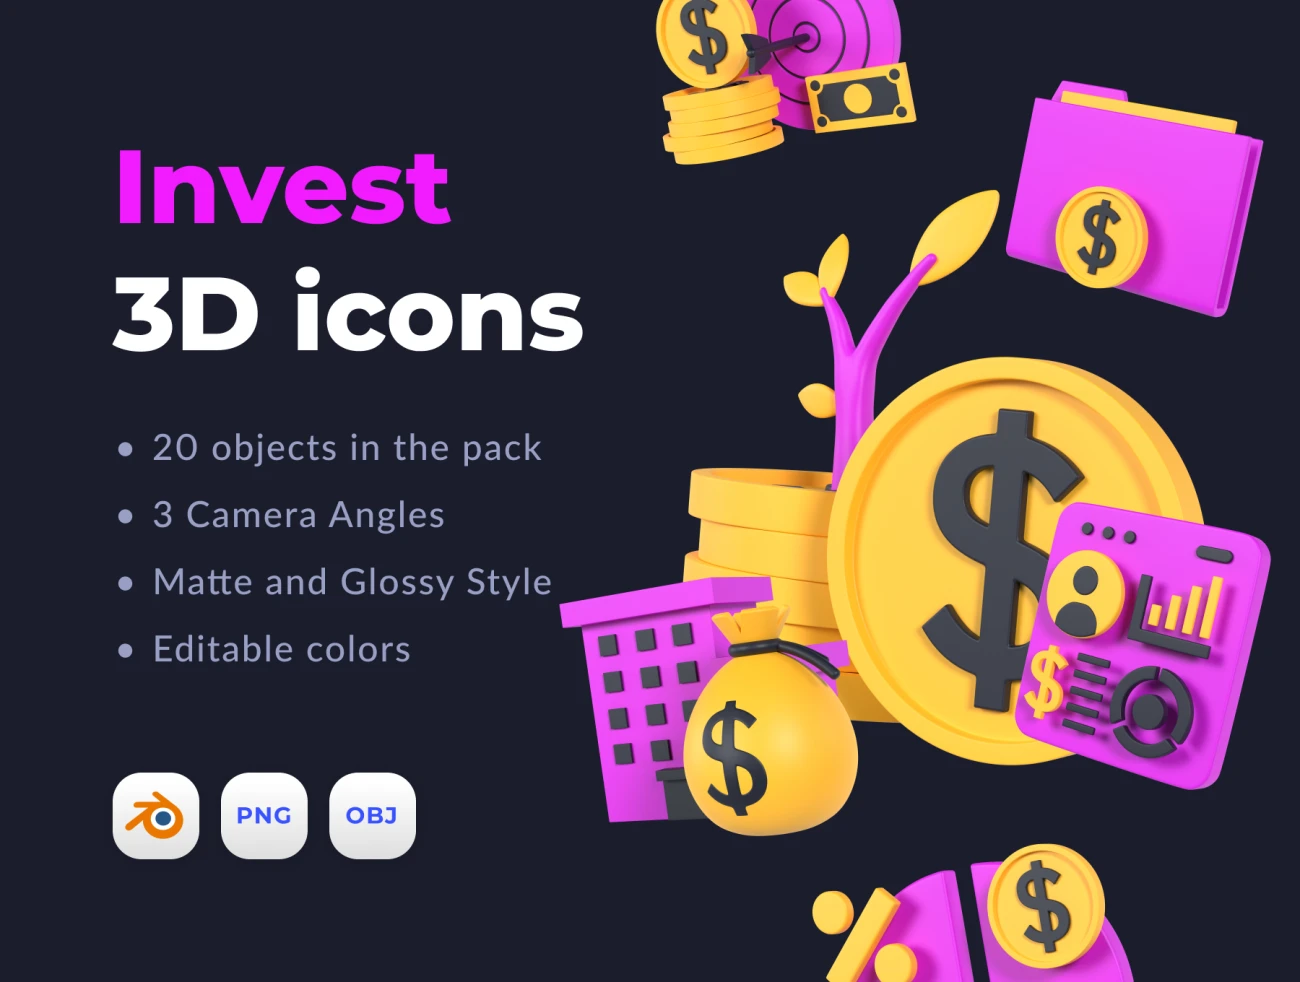 20个投资理财立体3D图标模型素材 Invest 3D icons .blender插图1